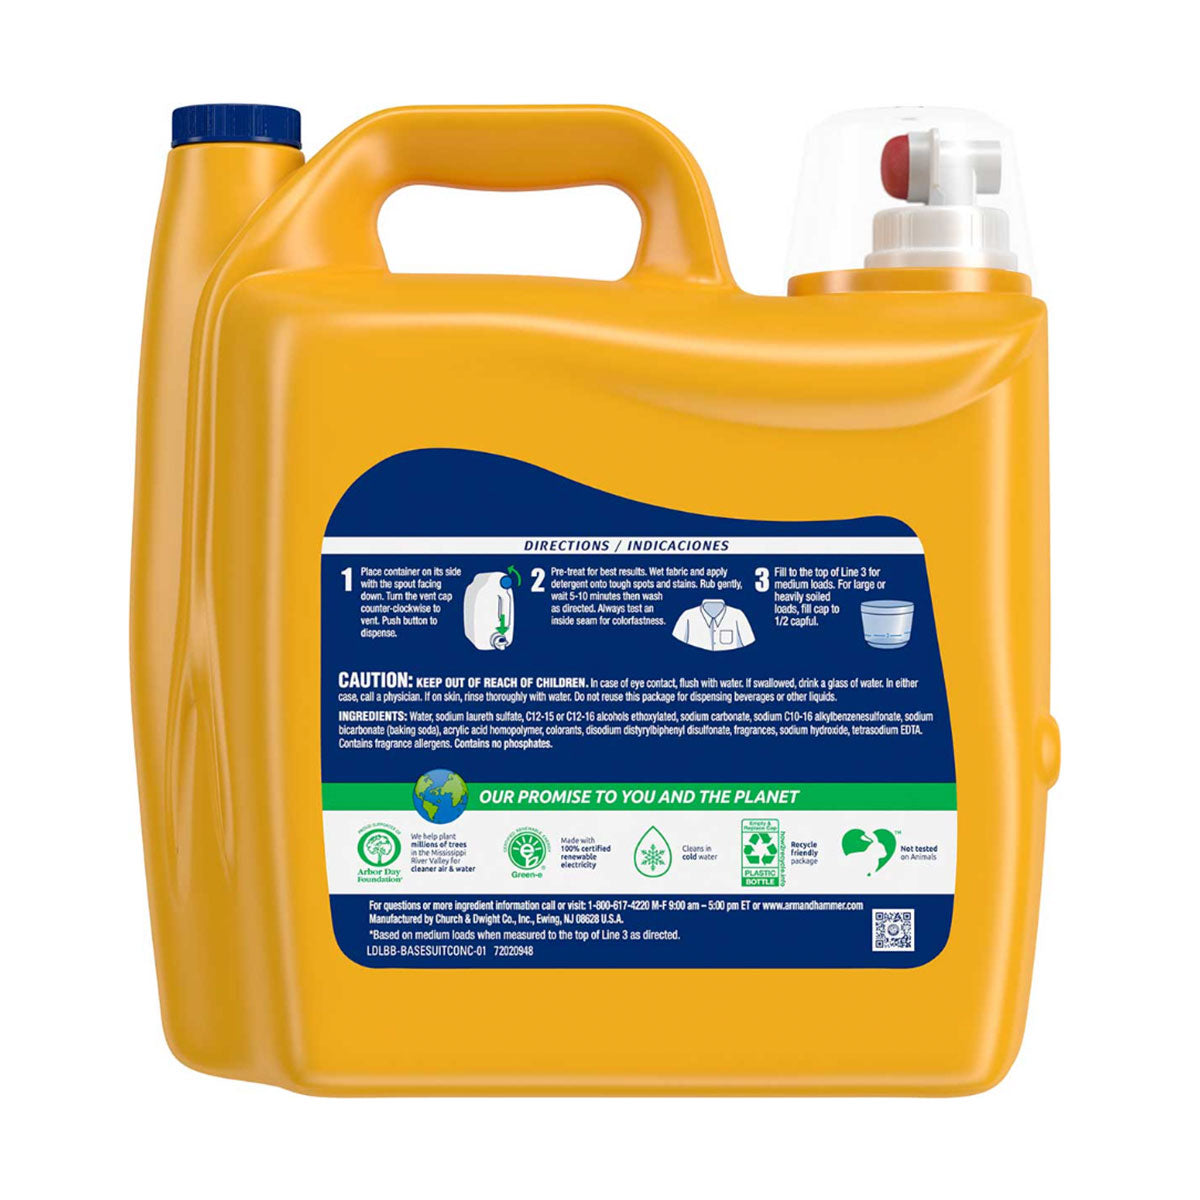 Detergente líquido concentrado para ropa Arm & Hammer Clean Burst, Alta Eficiencia 5,03 litros (170 cargas)